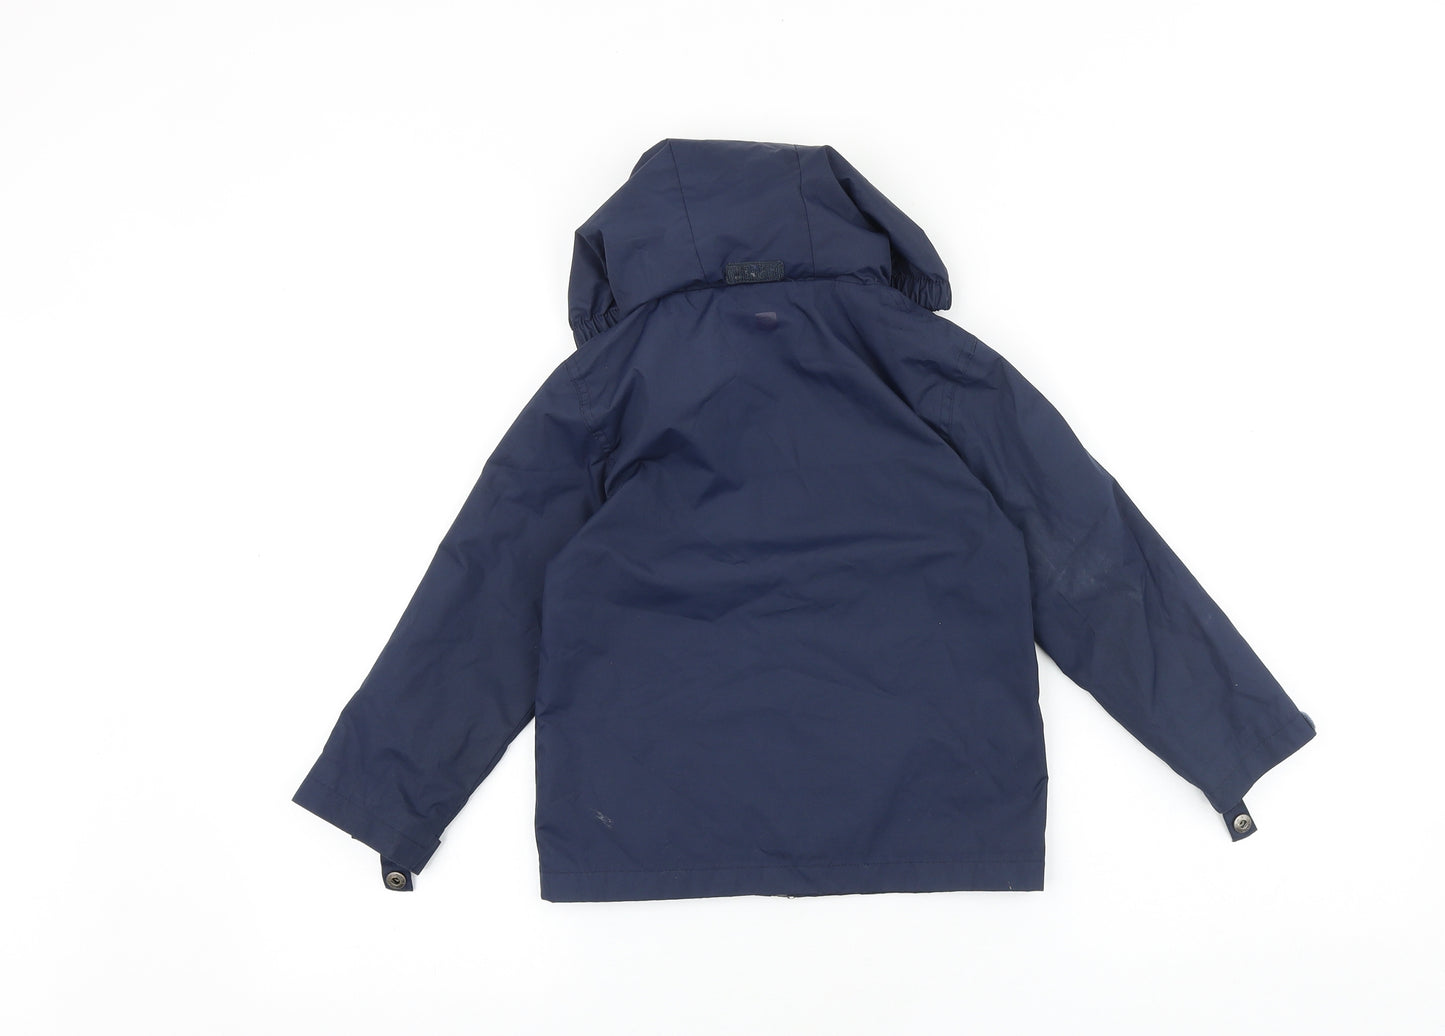 Mountain Warehouse Boys Blue Windbreaker Jacket Size 3-4 Years Zip